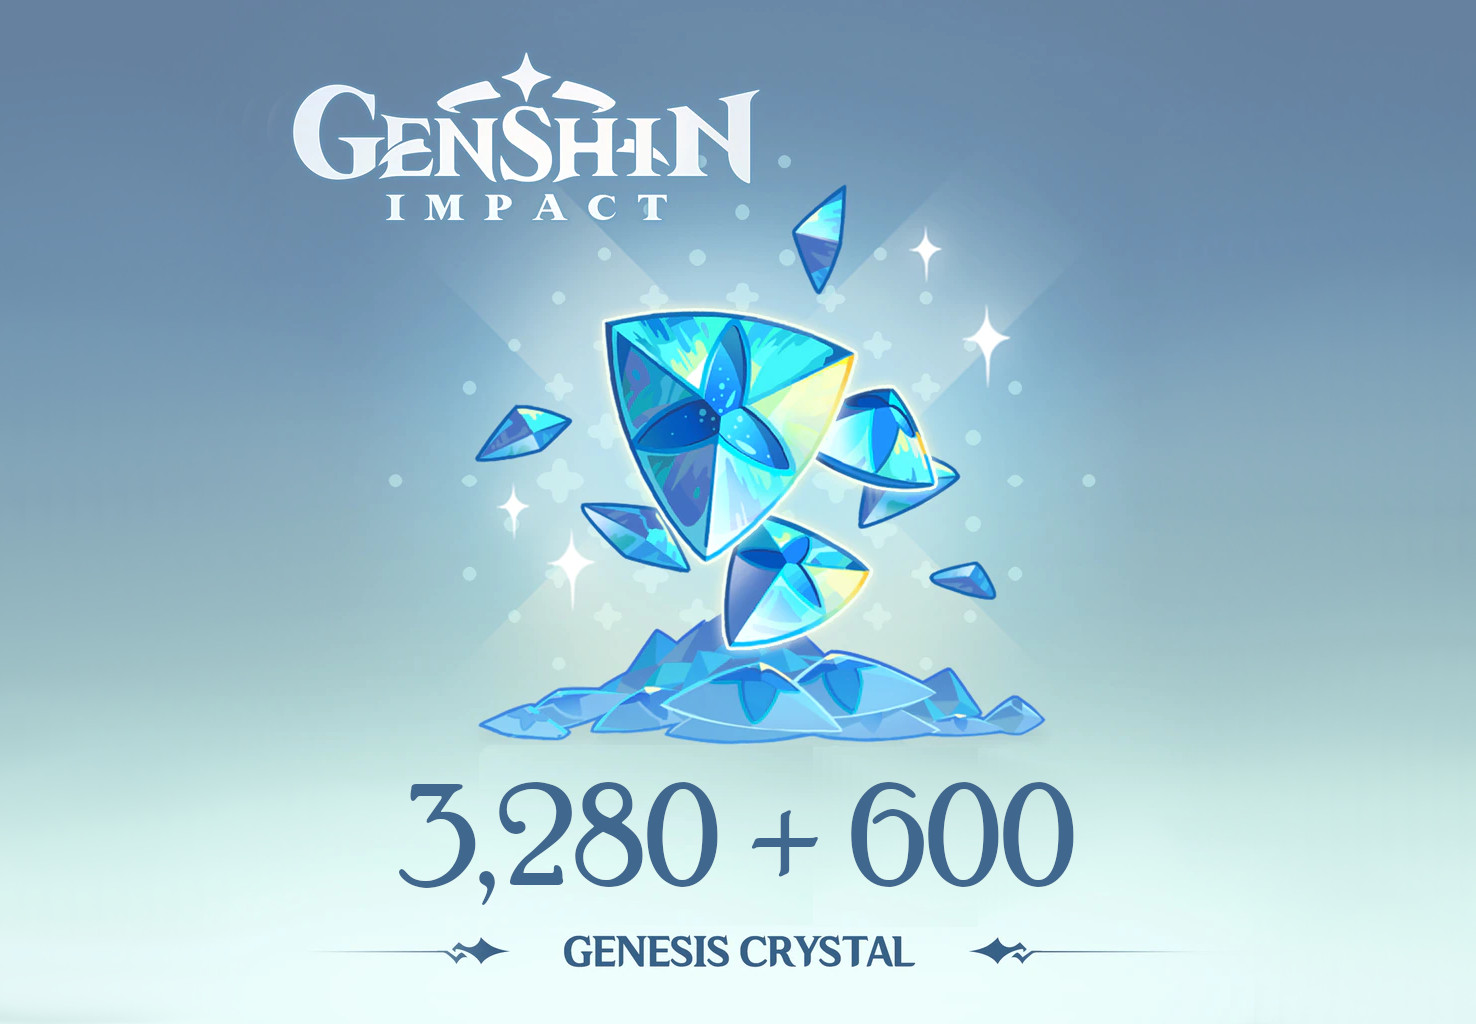 [$ 53.39] Genshin Impact - 3,280 + 600 Genesis Crystals Reidos Voucher